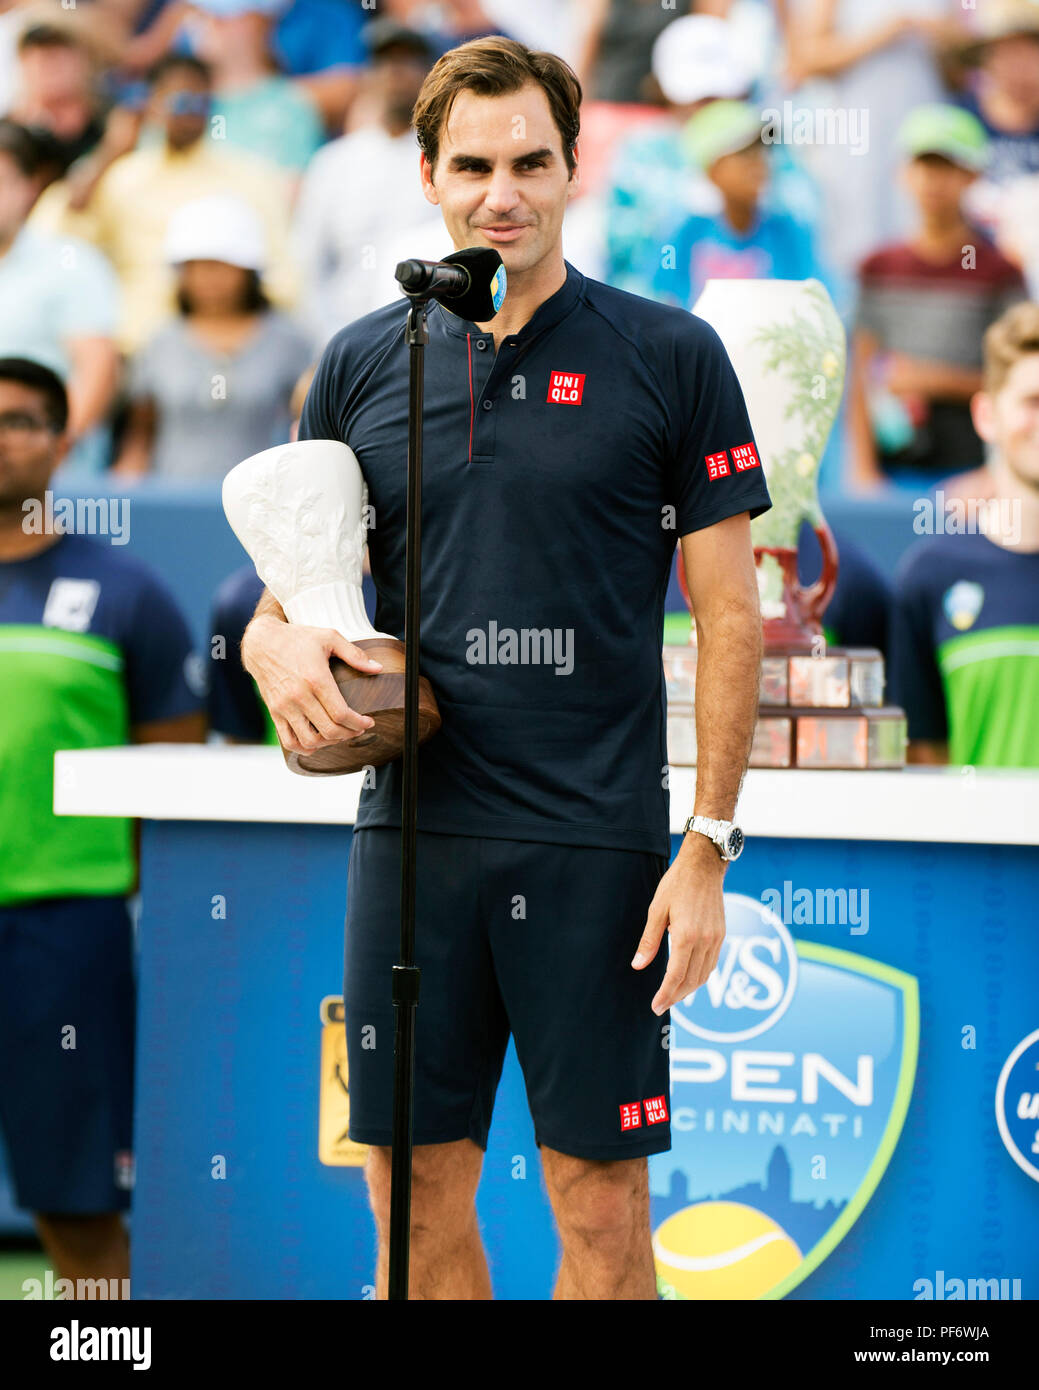 Mason, Ohio, USA. August 19, 2018: Roger Federer (SUI) bei der Preisverleihung am westlichen Süden öffnen, Mason, Ohio, USA. Brent Clark/Alamy leben Nachrichten Stockfoto